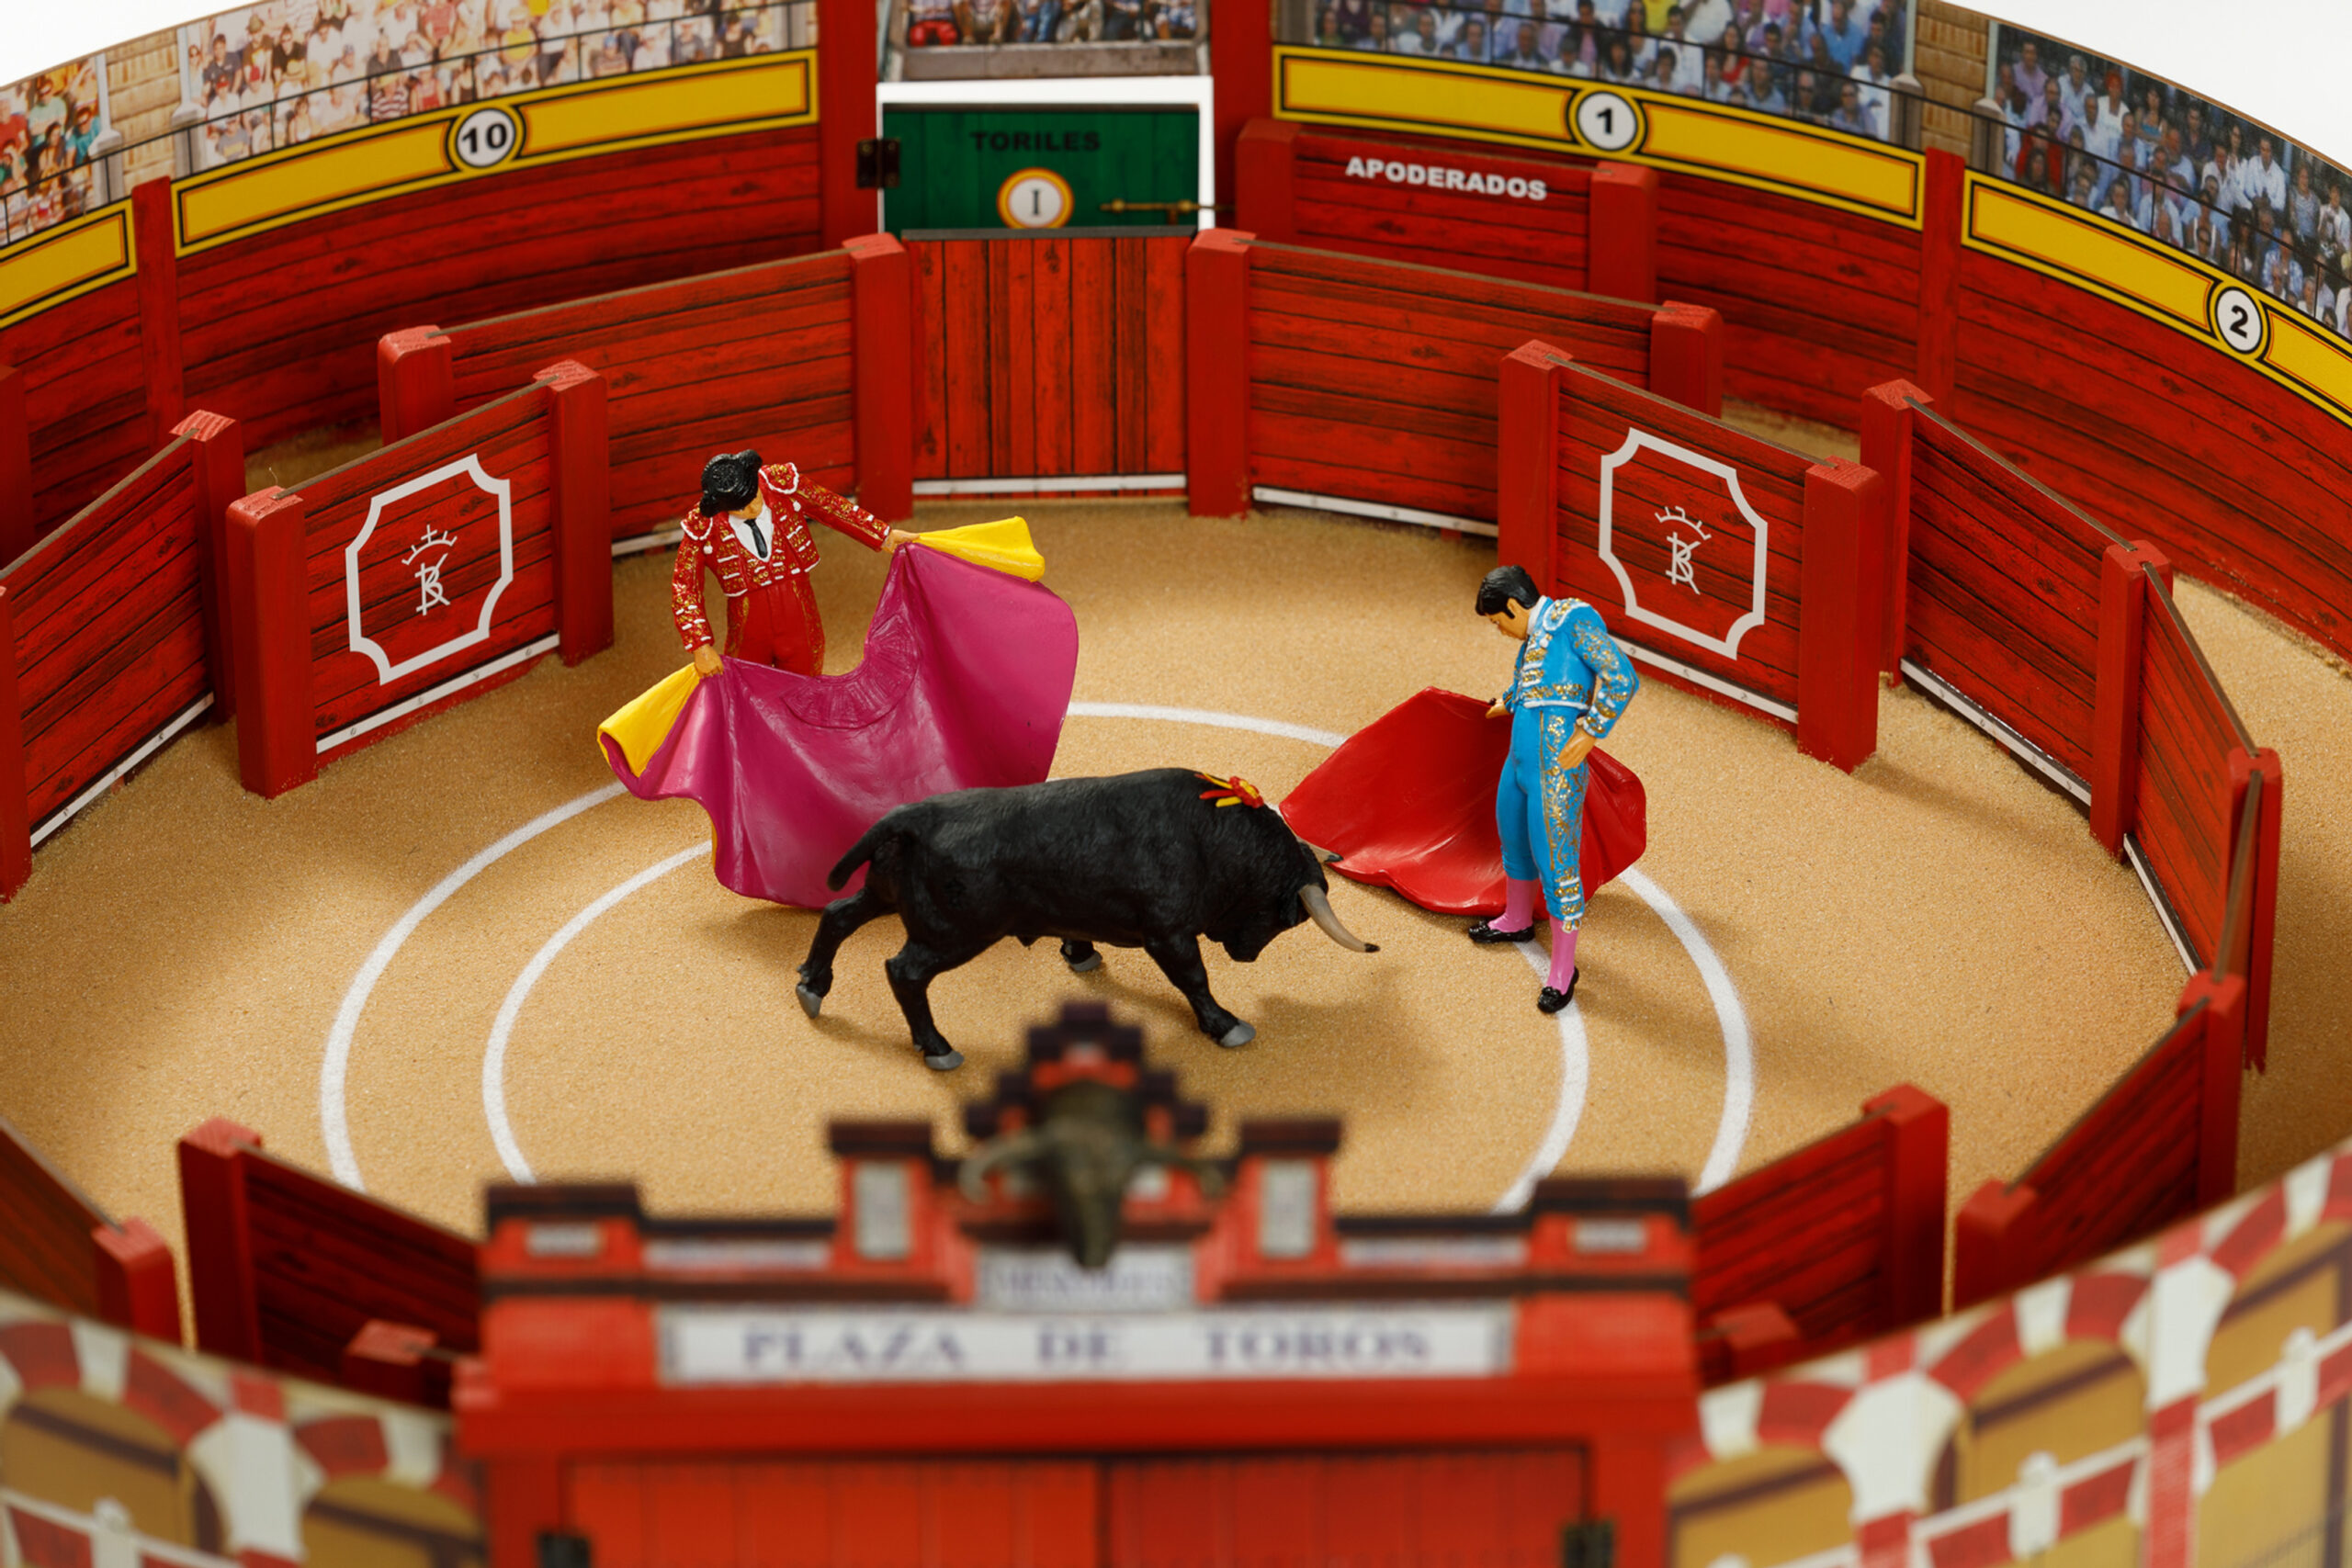 ▷ Juguete: Plaza de Toros en miniatura, artesanal